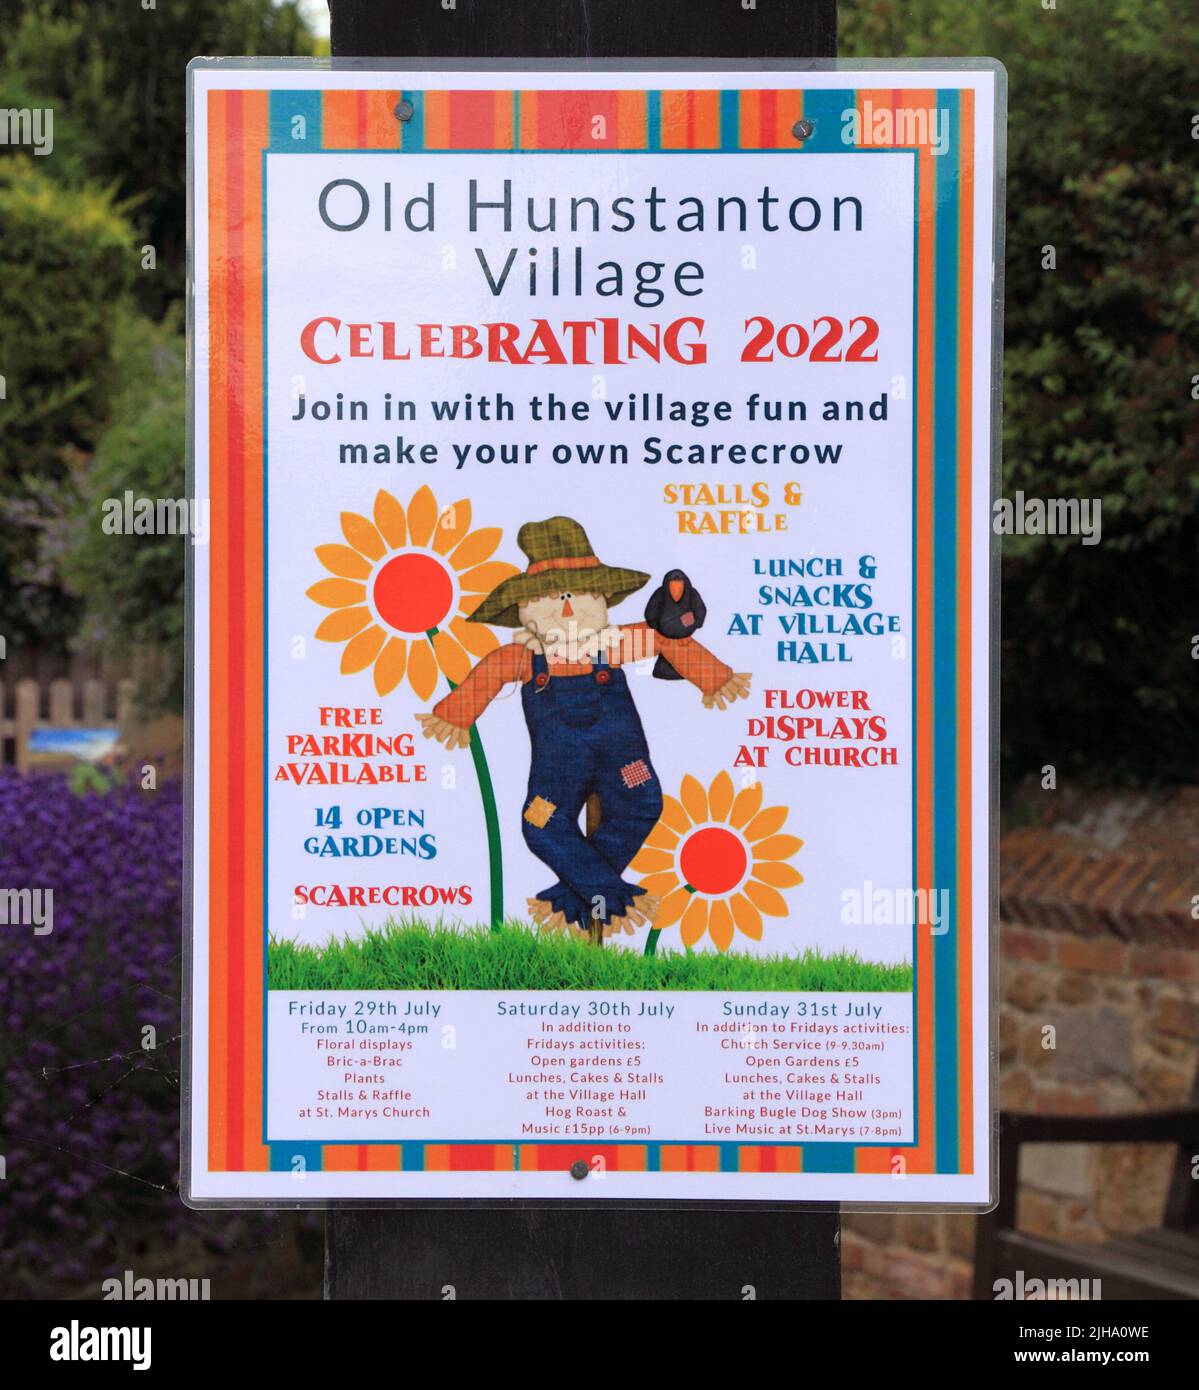 Old Hunstanton Village, fête de 2022, panneau, affiche, Norfolk, Angleterre Banque D'Images